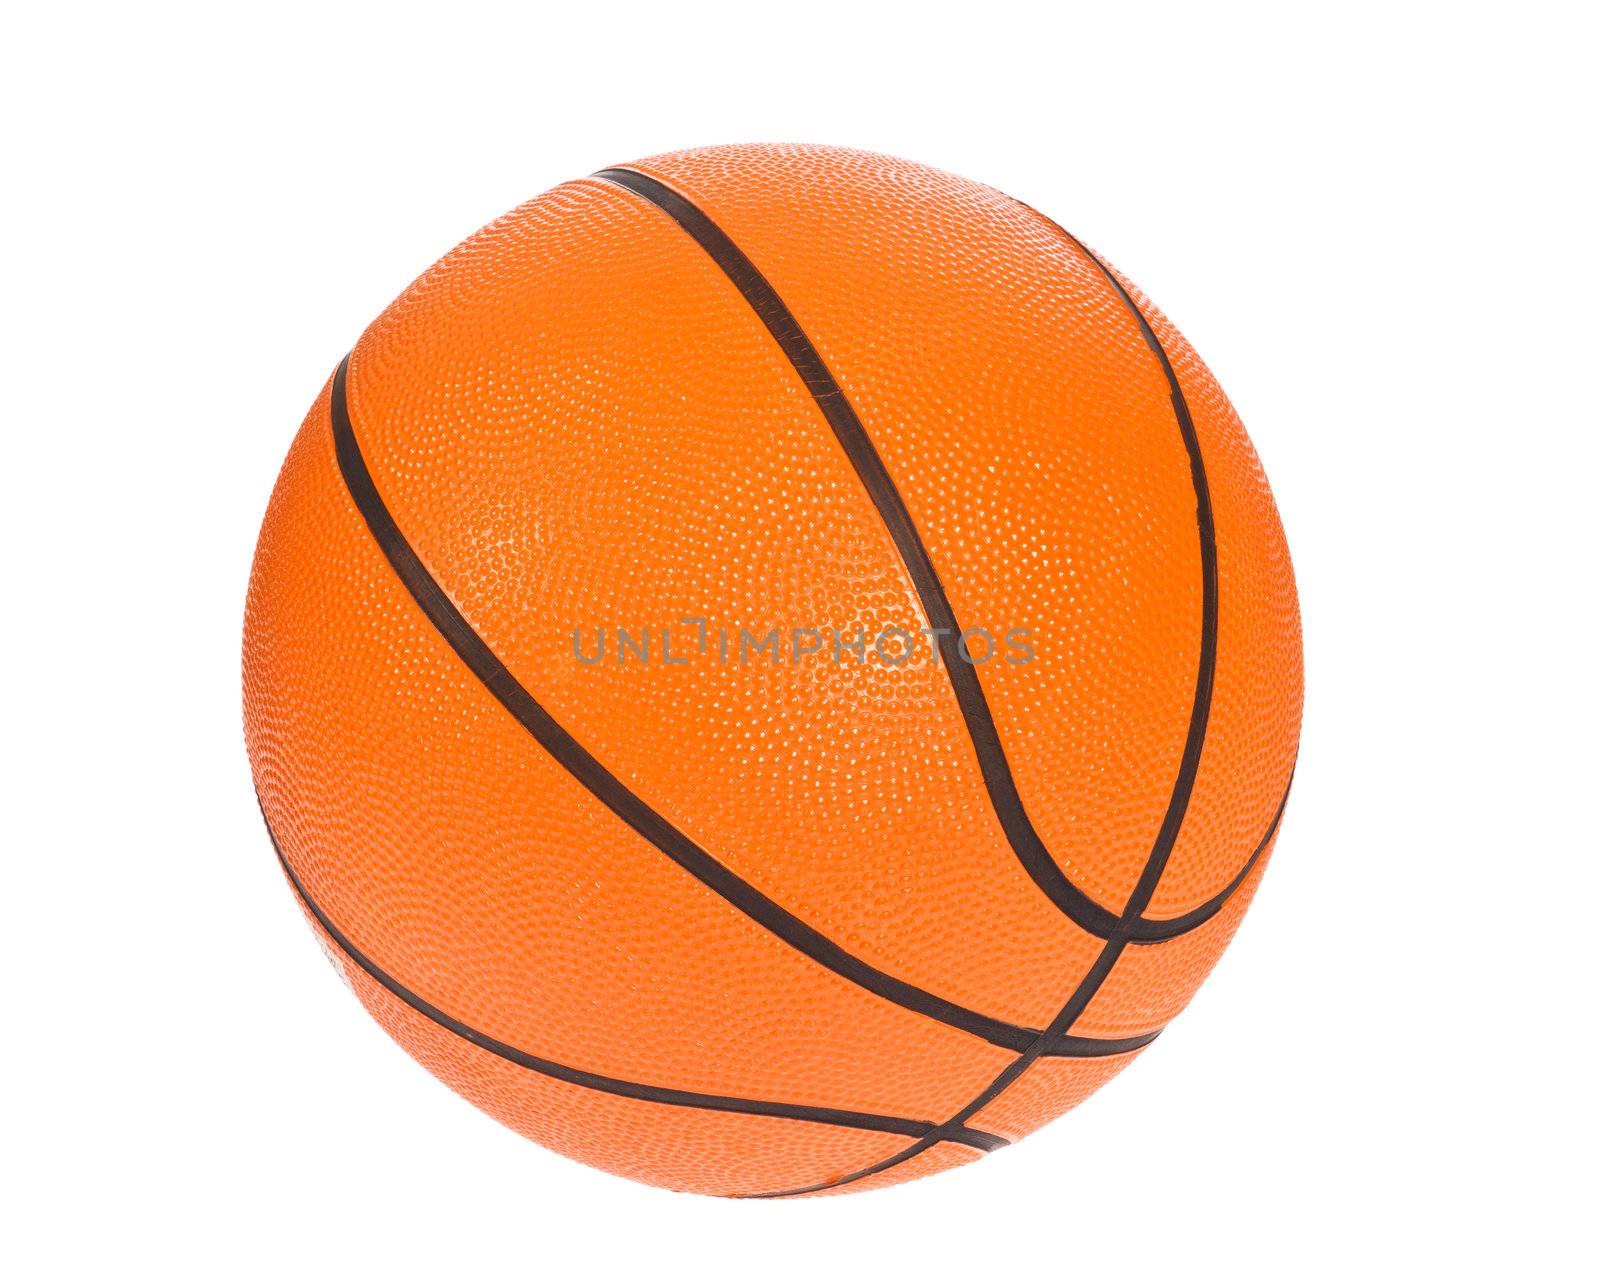 Orange basket ball by aguirre_mar